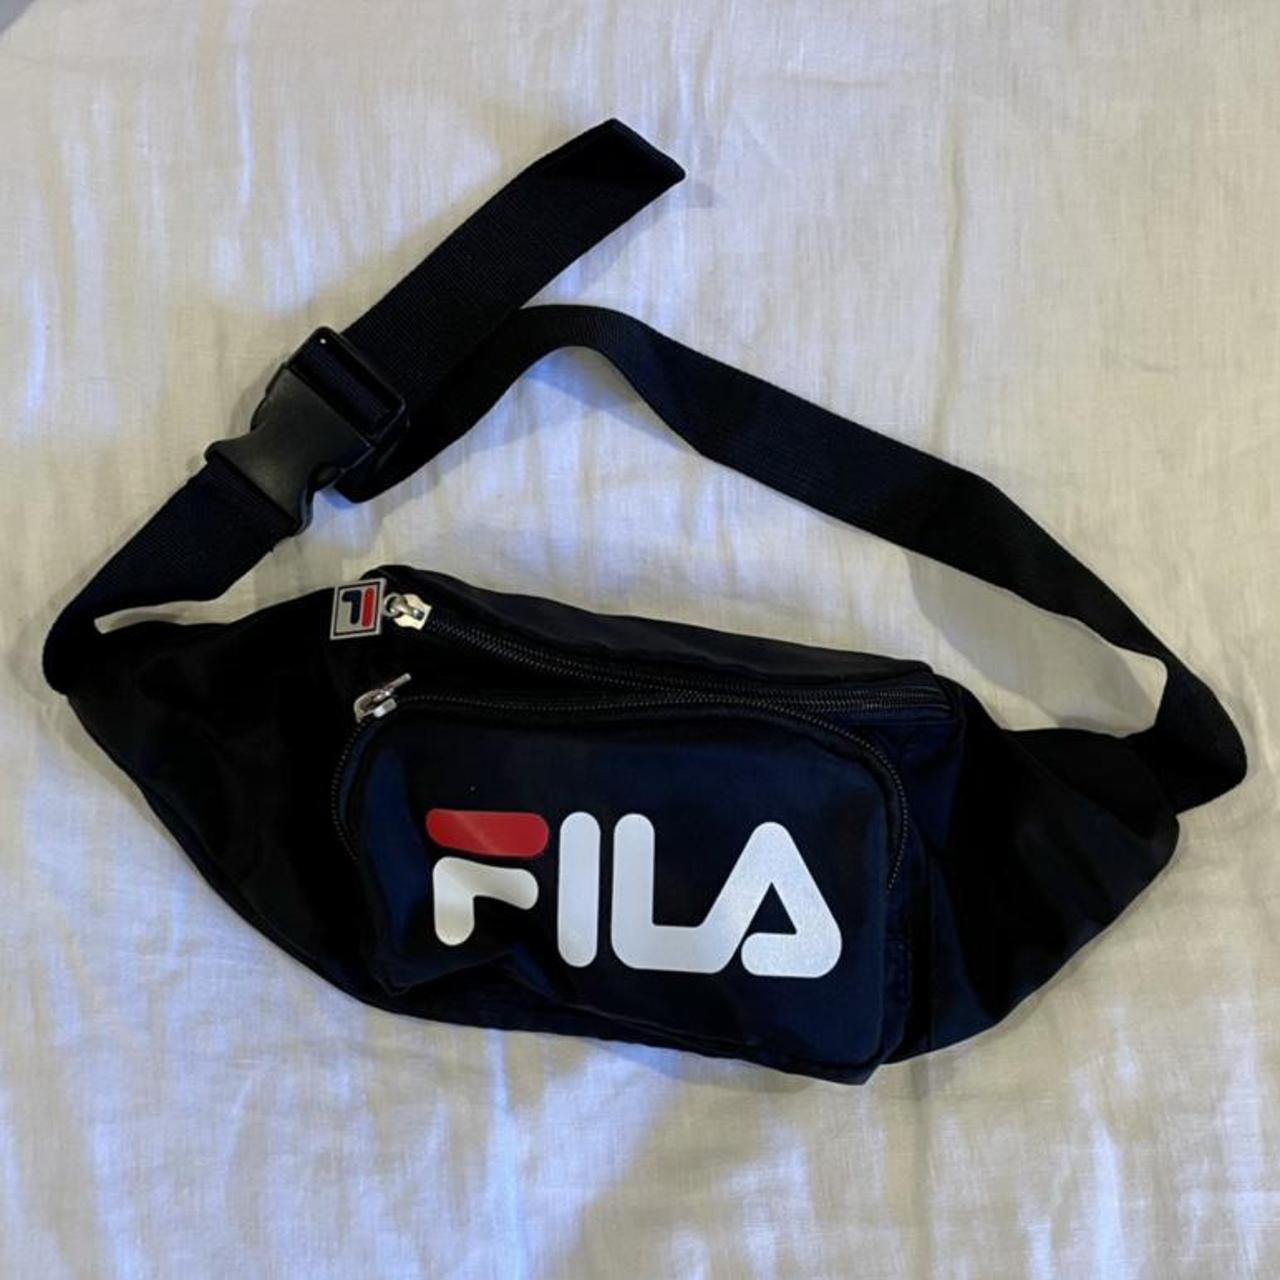 FILA fanny pack/belt bag ️🤍 ️ Black with red and... - Depop